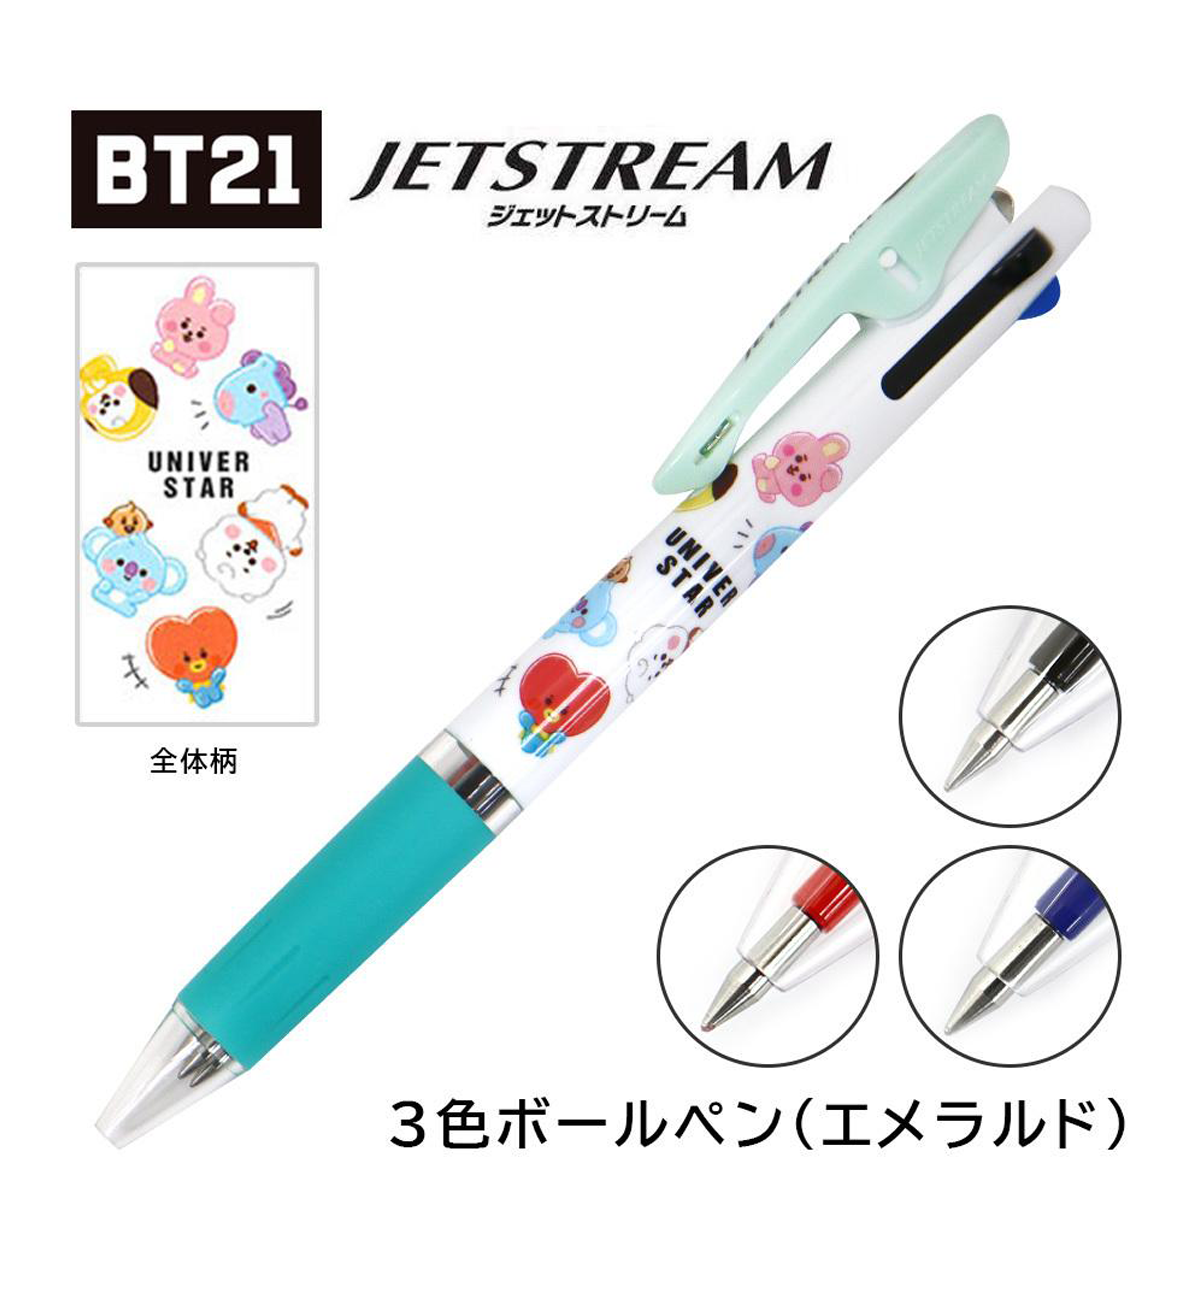 BT21 Jetstream 0.5mm Pen [Design A]